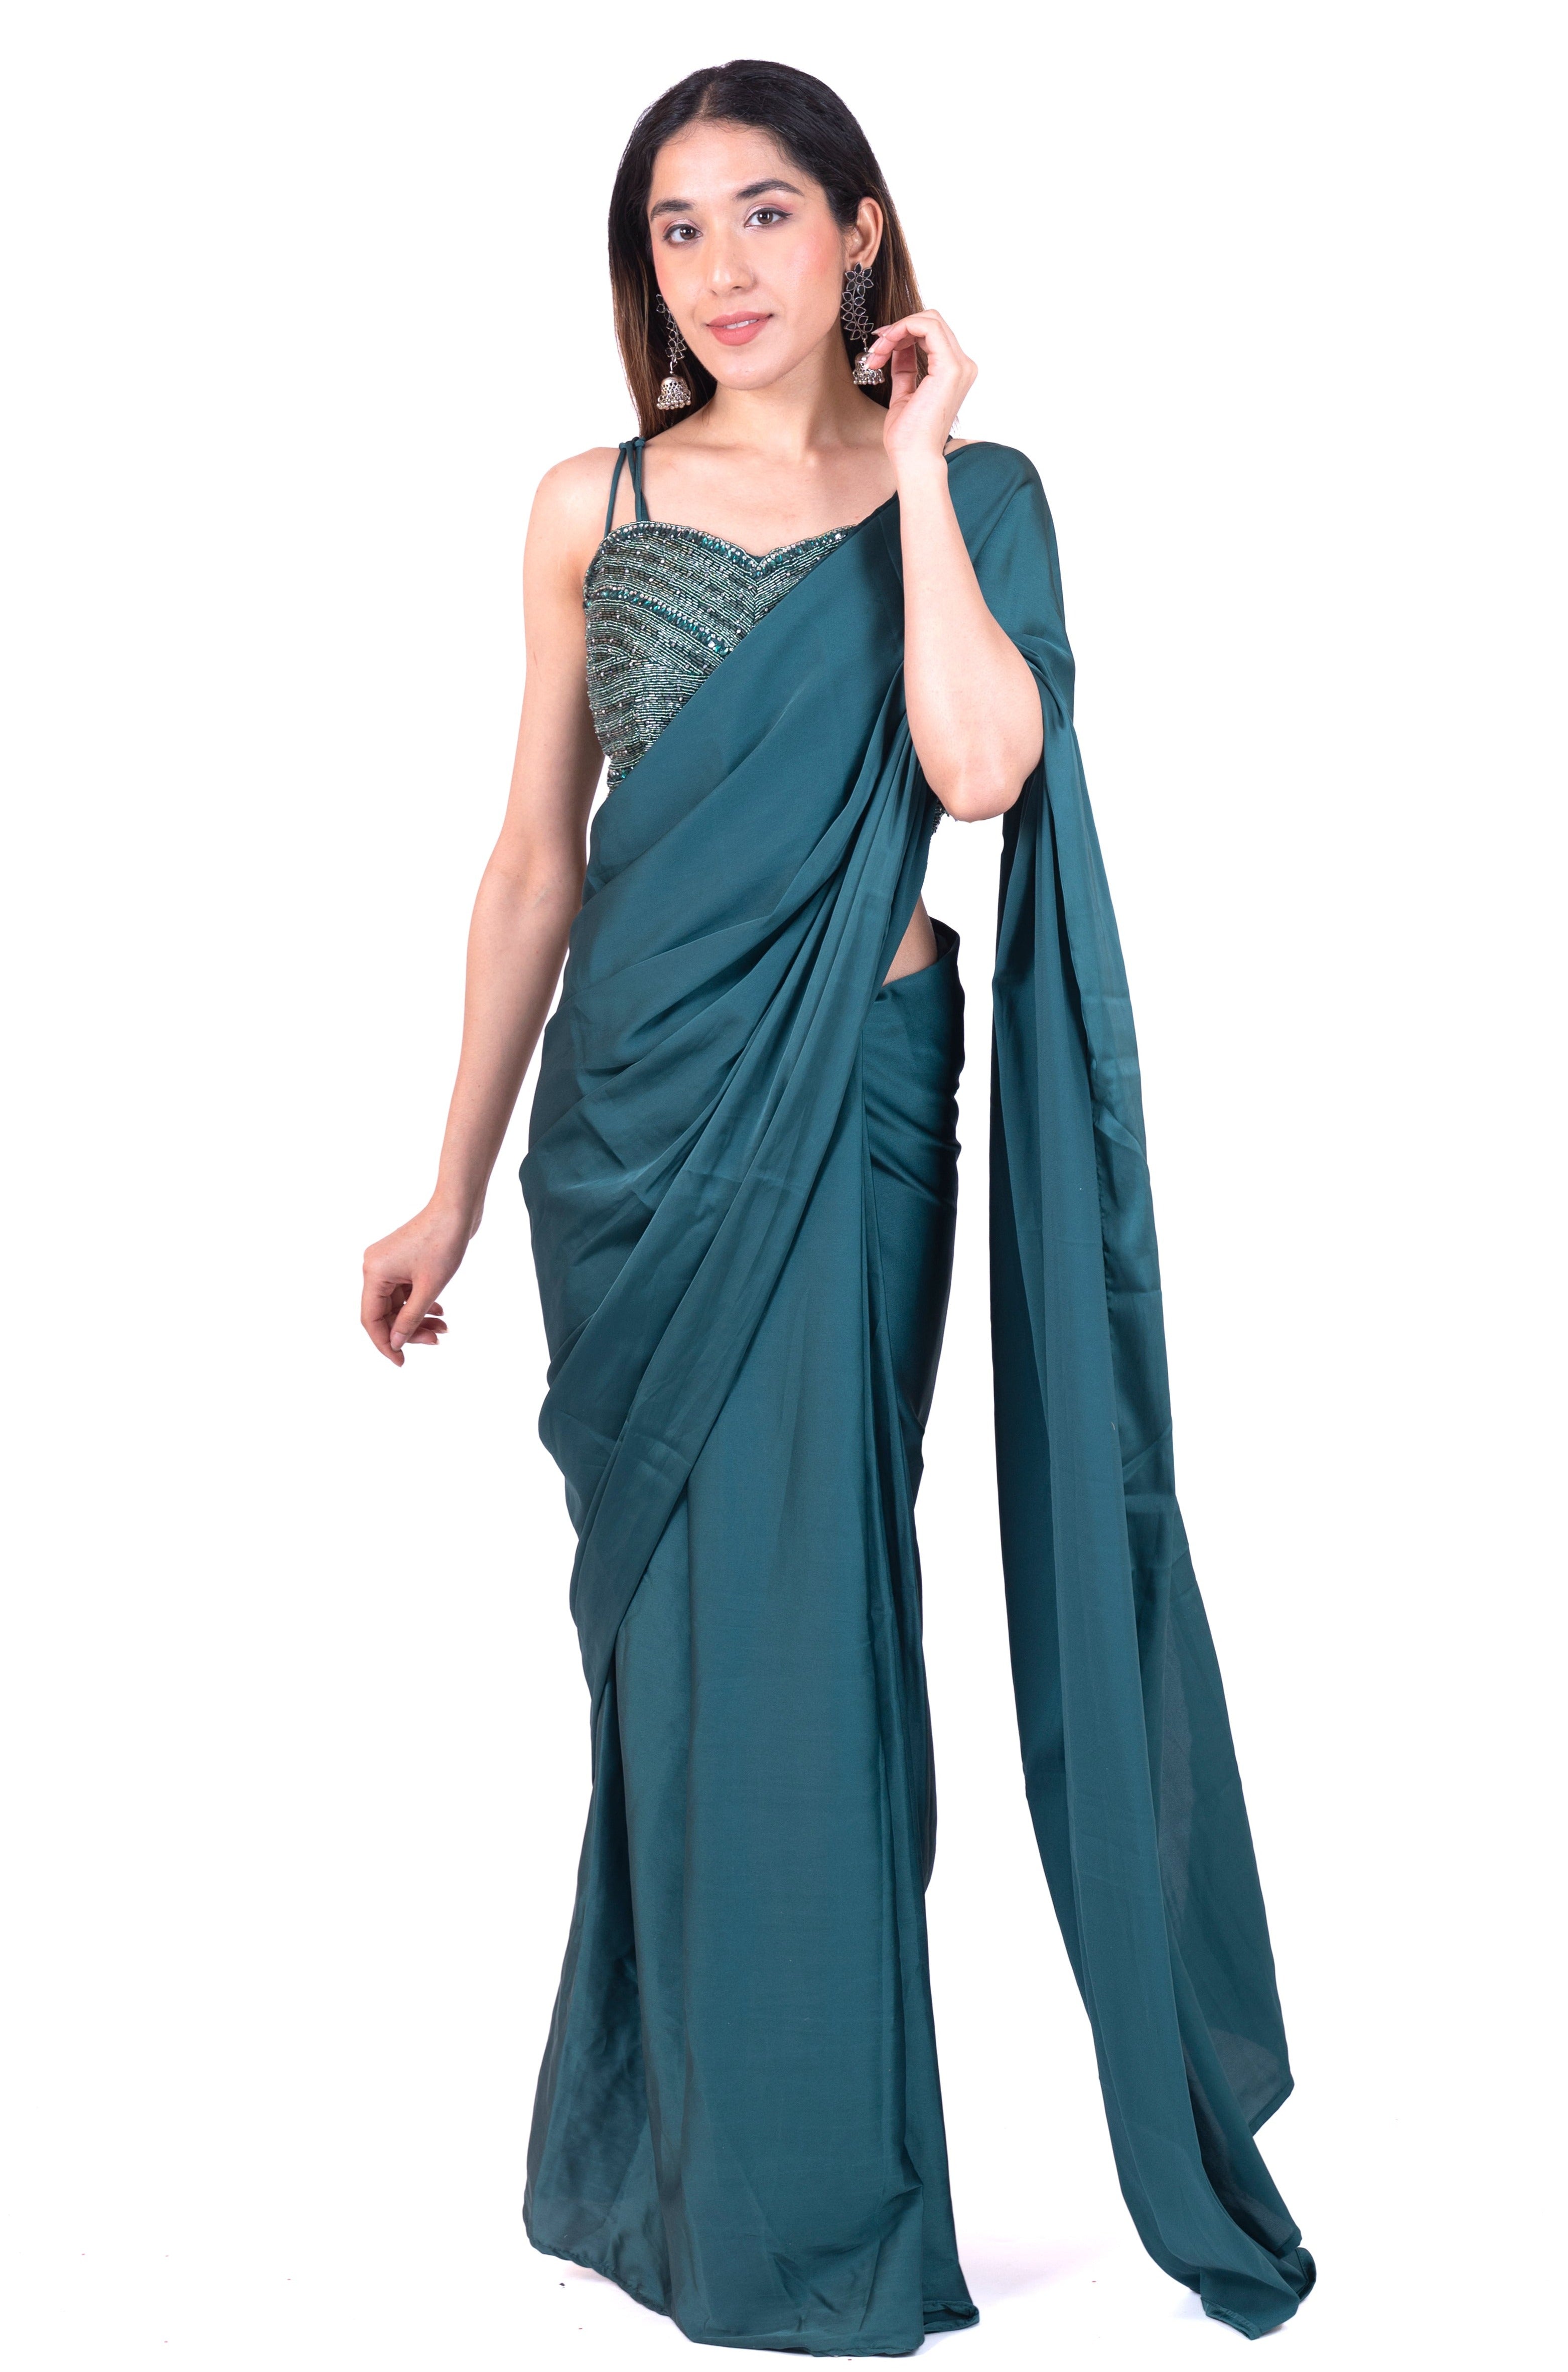 Designer Ready To Wear Saree - Isha Malviya's Choice